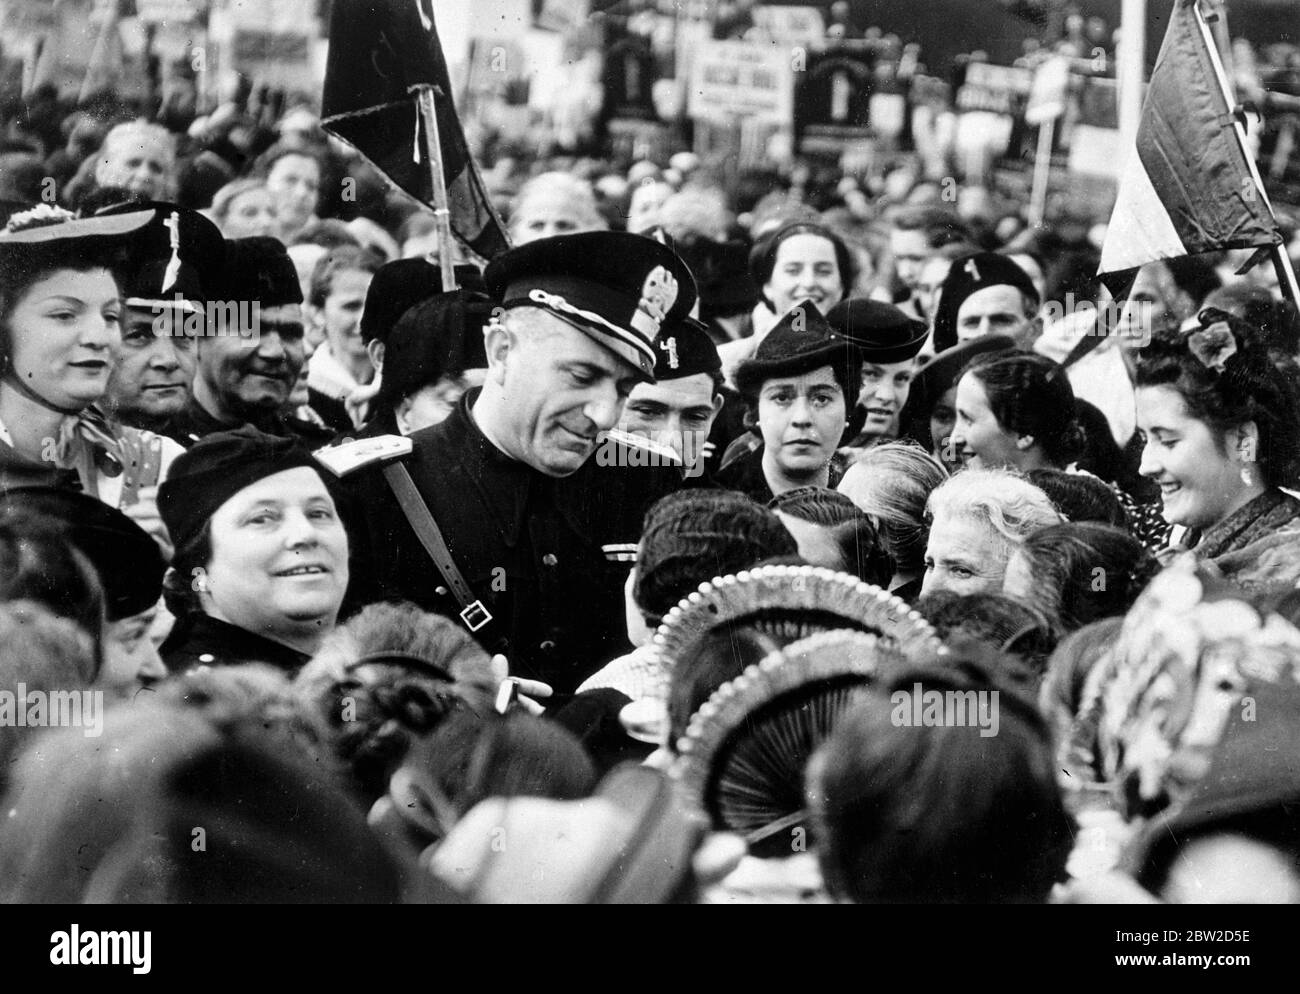 Commendatore Rena Parenti, chef de l'organisation fasciste en Lombardie, Italie, entouré de femmes partisans lorsqu'il a assisté au Festival annuel des femmes fascistes à Monza, Lombardie. 26 octobre 1938 Banque D'Images